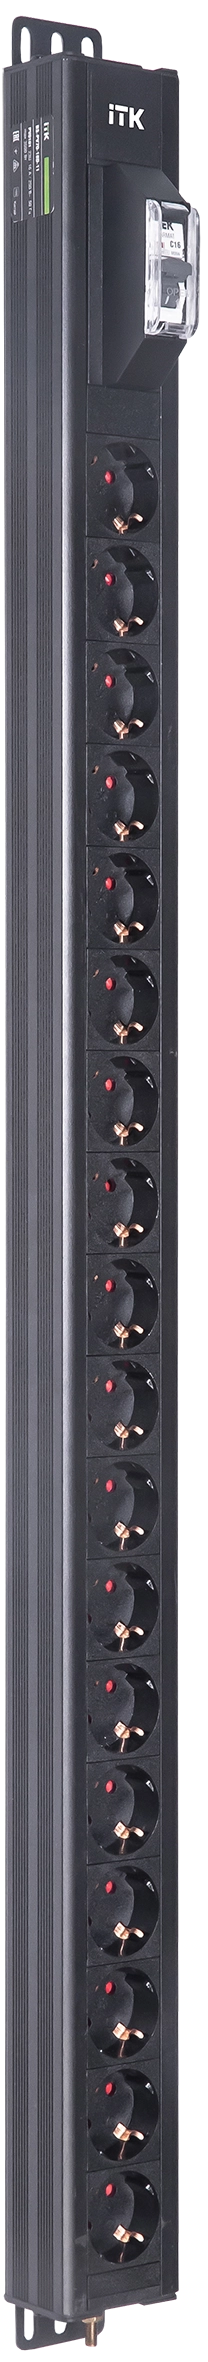 ITK BASE PDU вертикальный PV0101 23U 1 фаза 16А 18 розеток SCHUKO (немецкий стандарт) без кабеля с входным разъемом C20